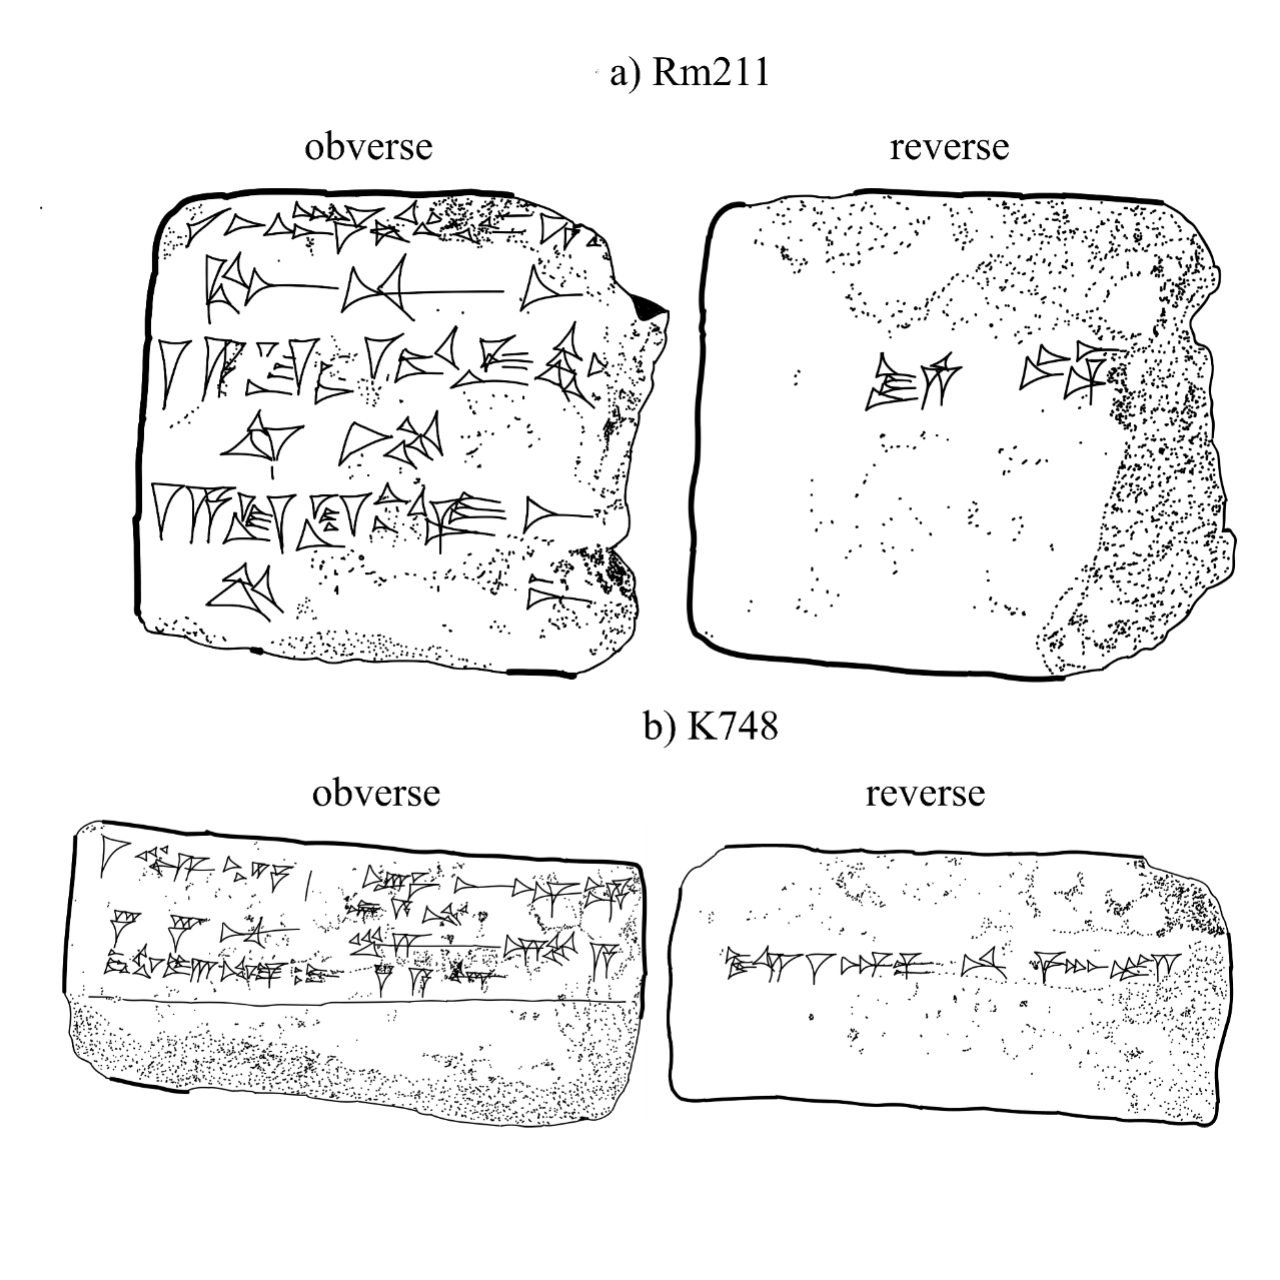 De Sonnestuerm, dee virun 2,700 Joer geschitt ass, gouf an assyresche Pëllen 3 dokumentéiert